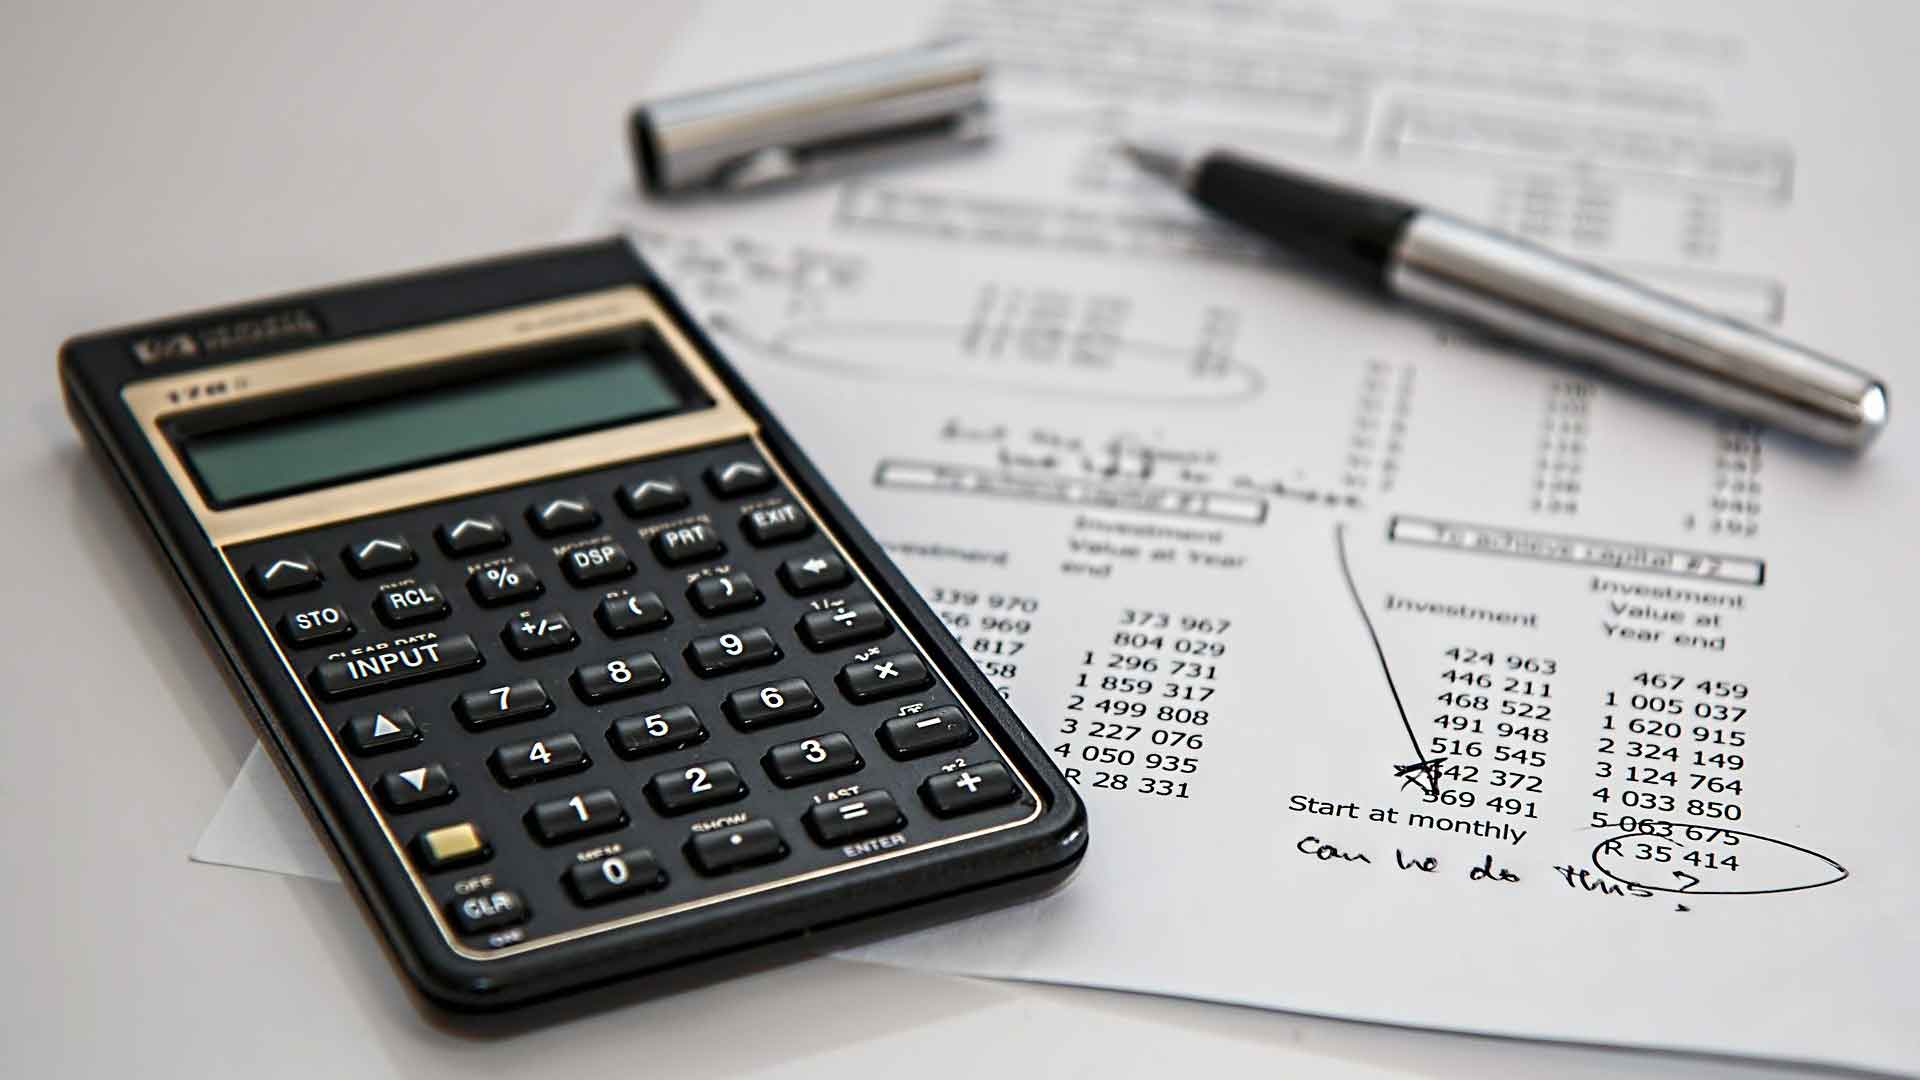 Imagens com uma folha com cálculos sobre investimentos, uma caneta e uma calculadora.